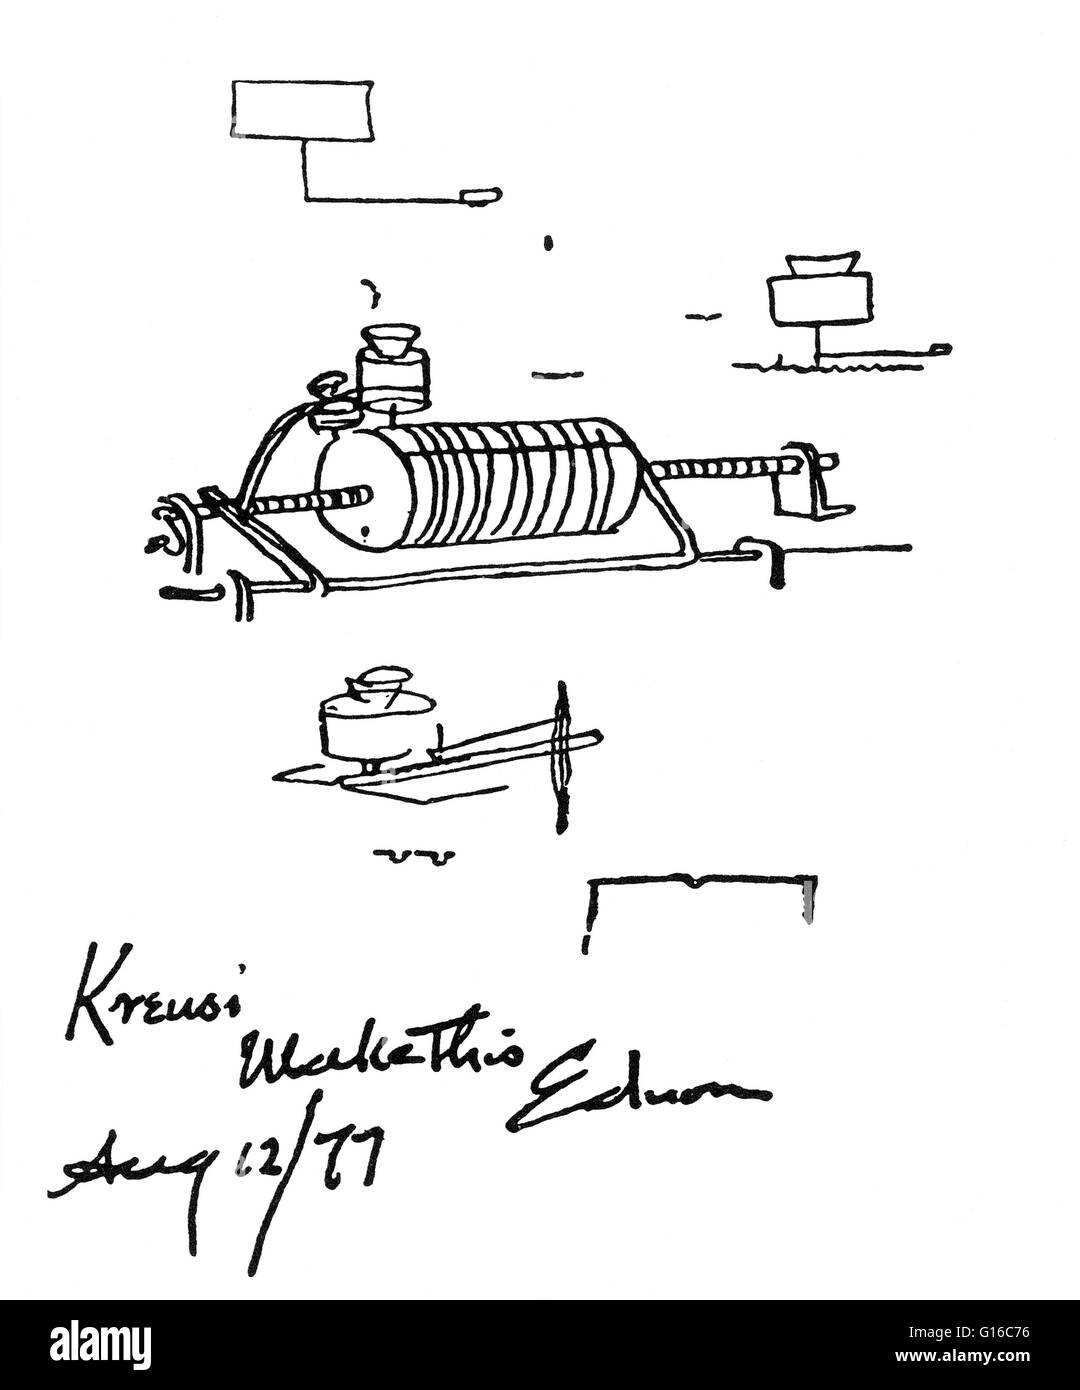 Riproduzione di Edison, schizzo del primo fonografo con istruzioni per Kruesi, suo modeller in 'make questo". Il fonografo fu inventato nel 1877 da Thomas Edison. Mentre altri inventori avevano prodotto i dispositivi che potrebbero registrare suoni, Edison phonogra Foto Stock